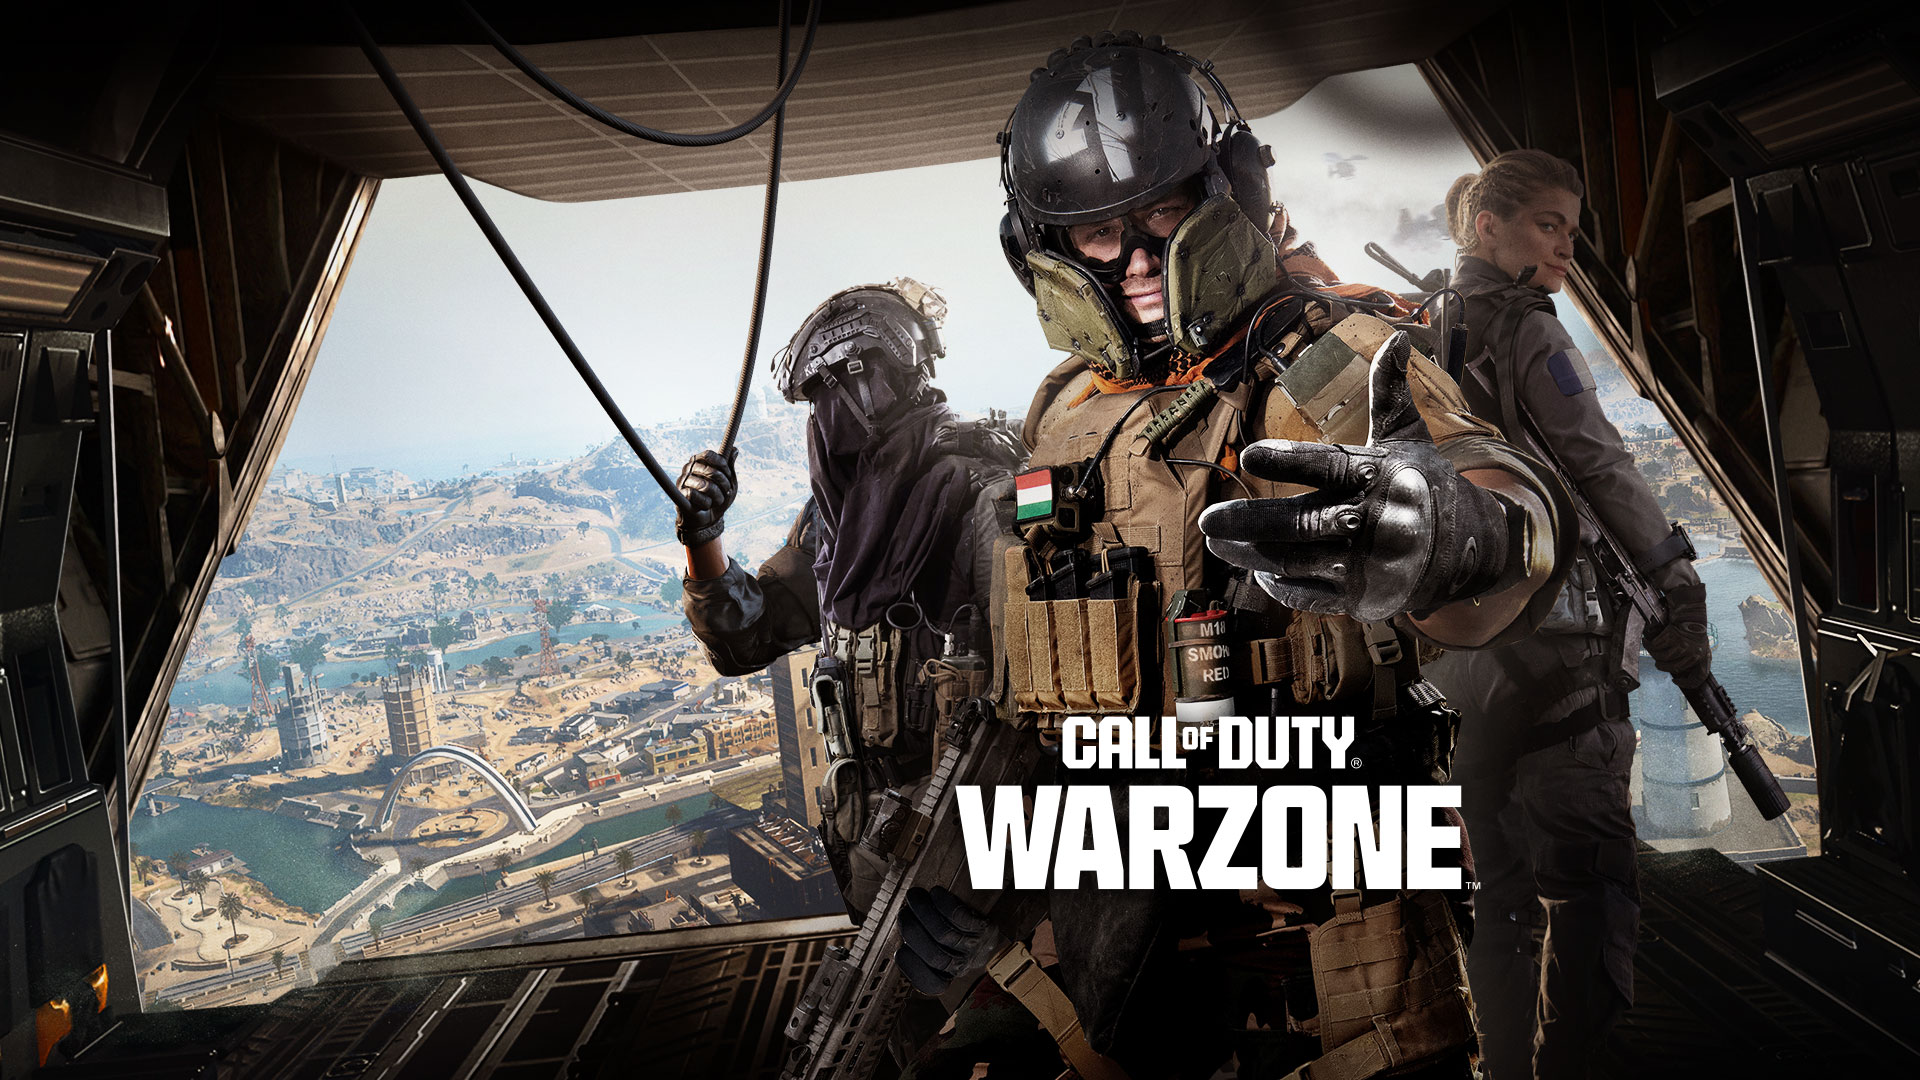 Call of Duty Warzone, v zadnej časti dopravného lietadla stojí trojica operátorov, ktorí vás pozývajú do akcie.